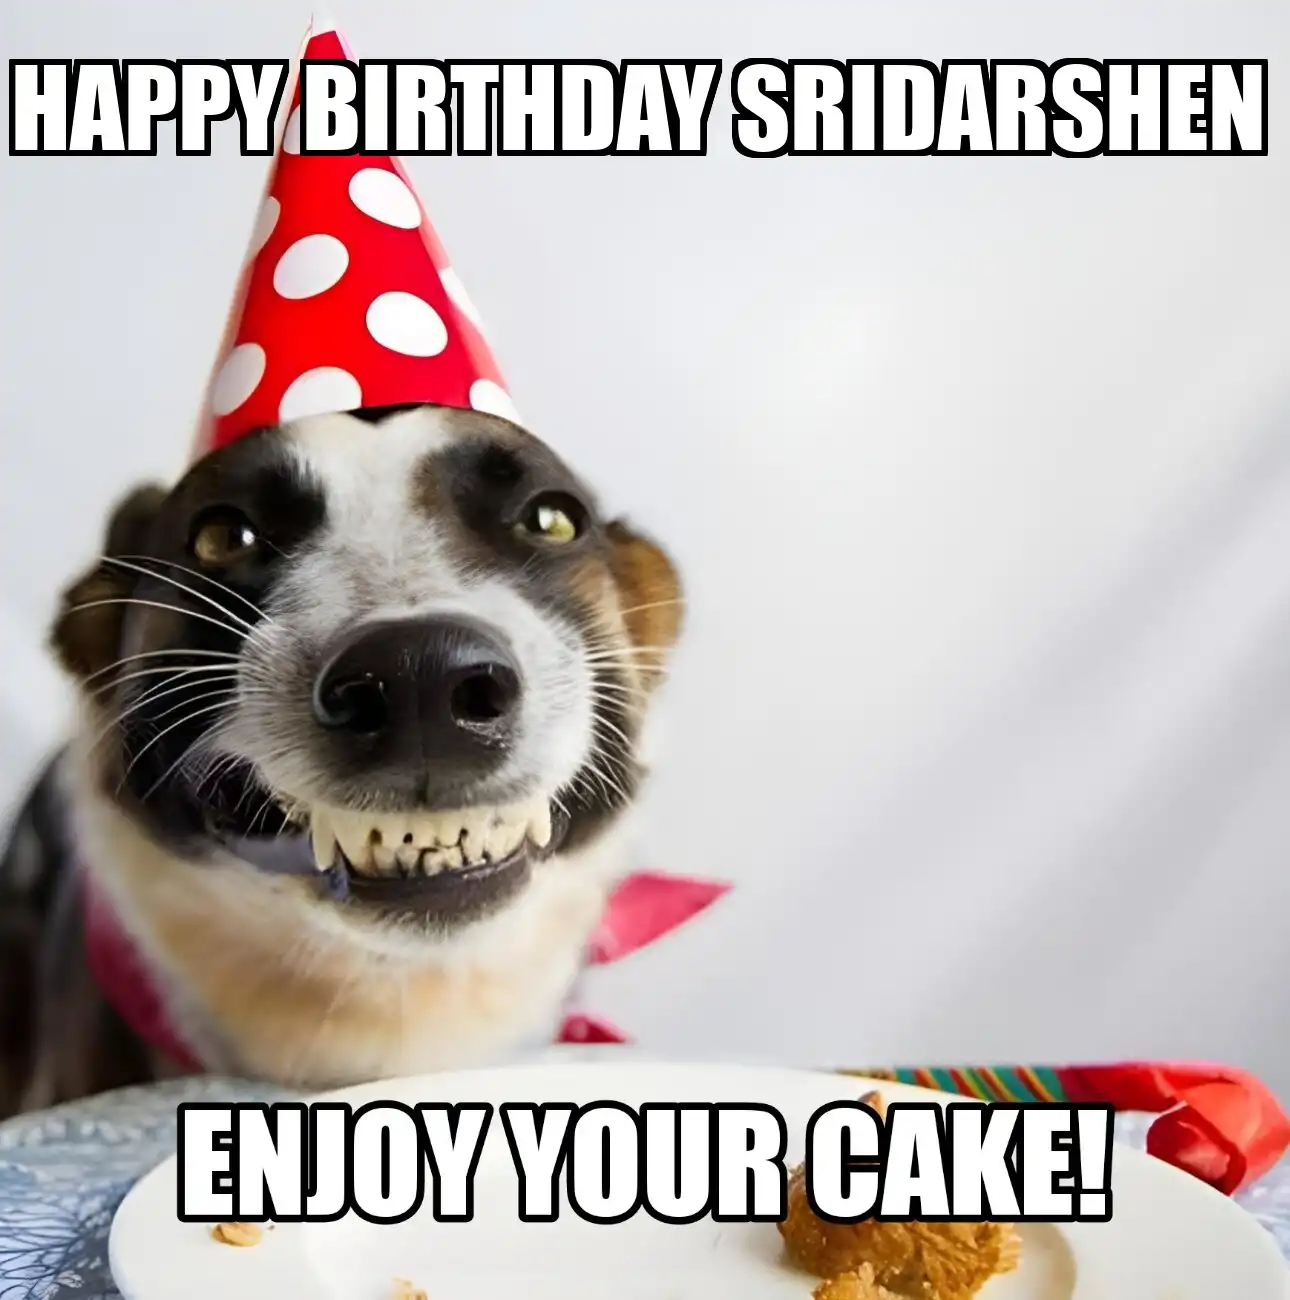 Happy Birthday Sridarshen Enjoy Your Cake Dog Meme